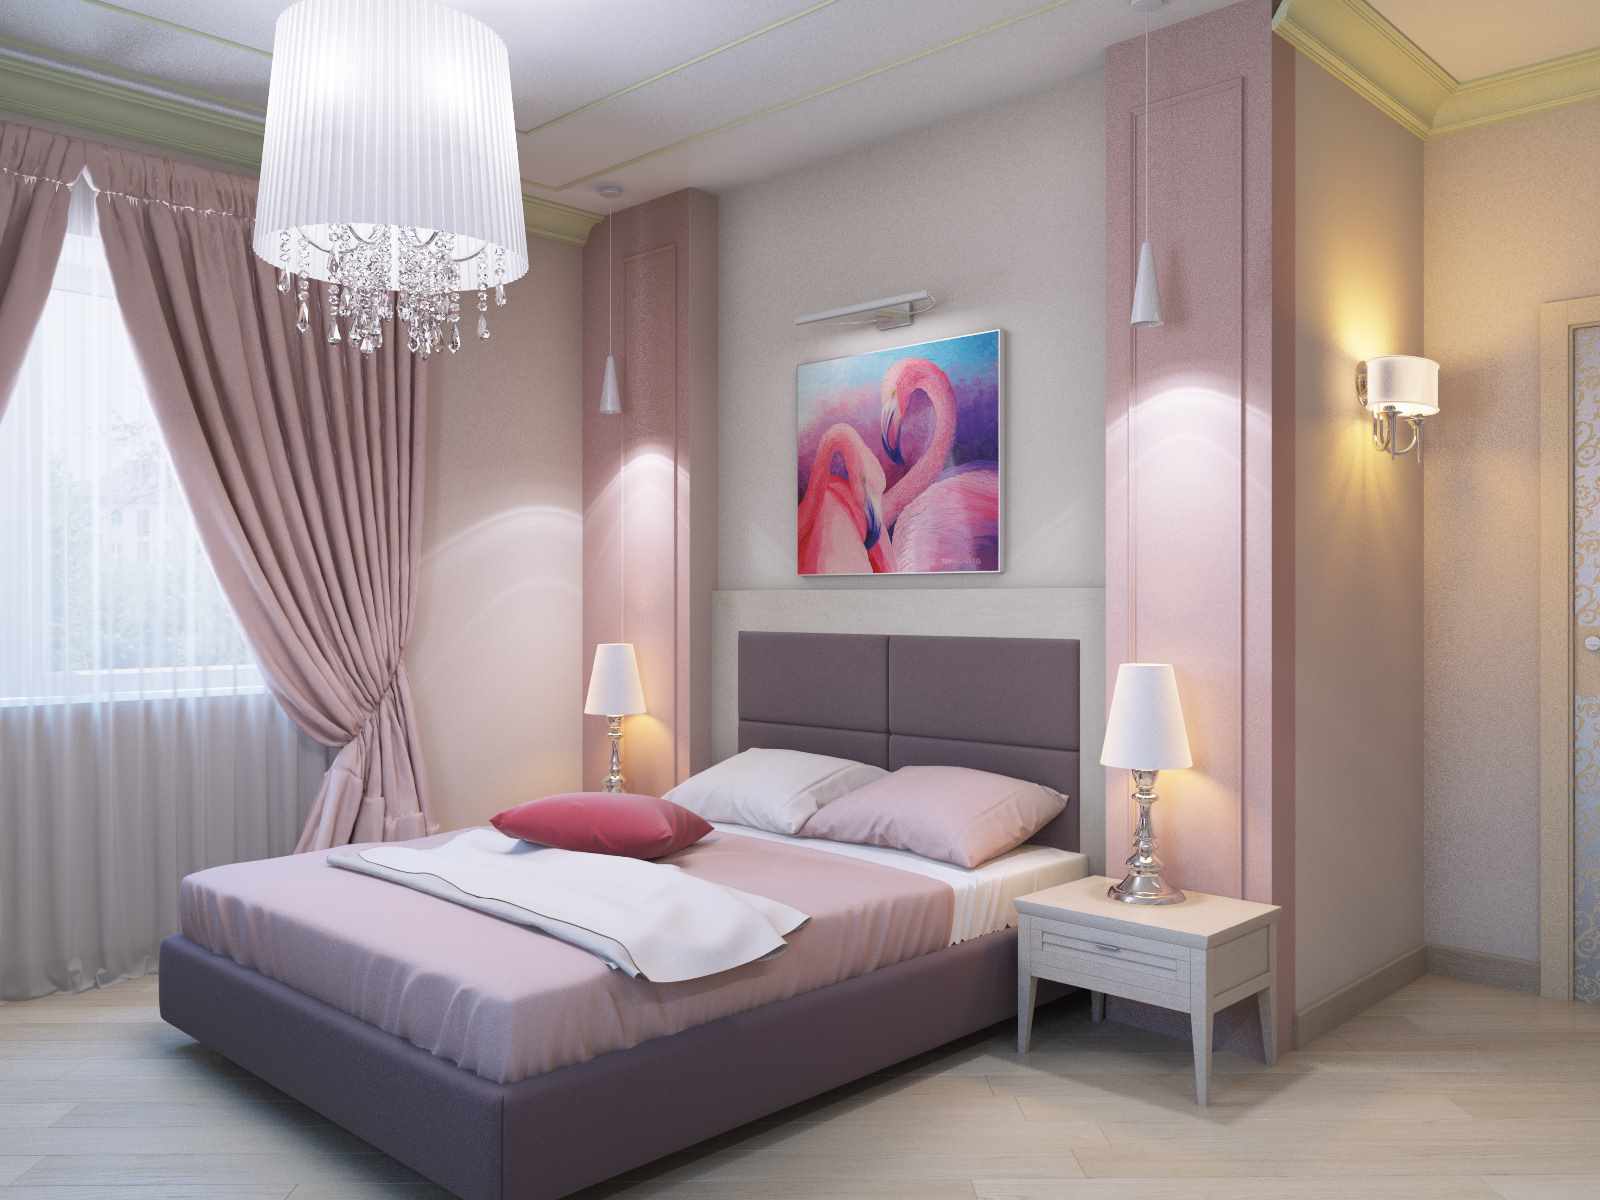 مثال على زخرفة مشرقة لأسلوب الجدران في غرفة النوم